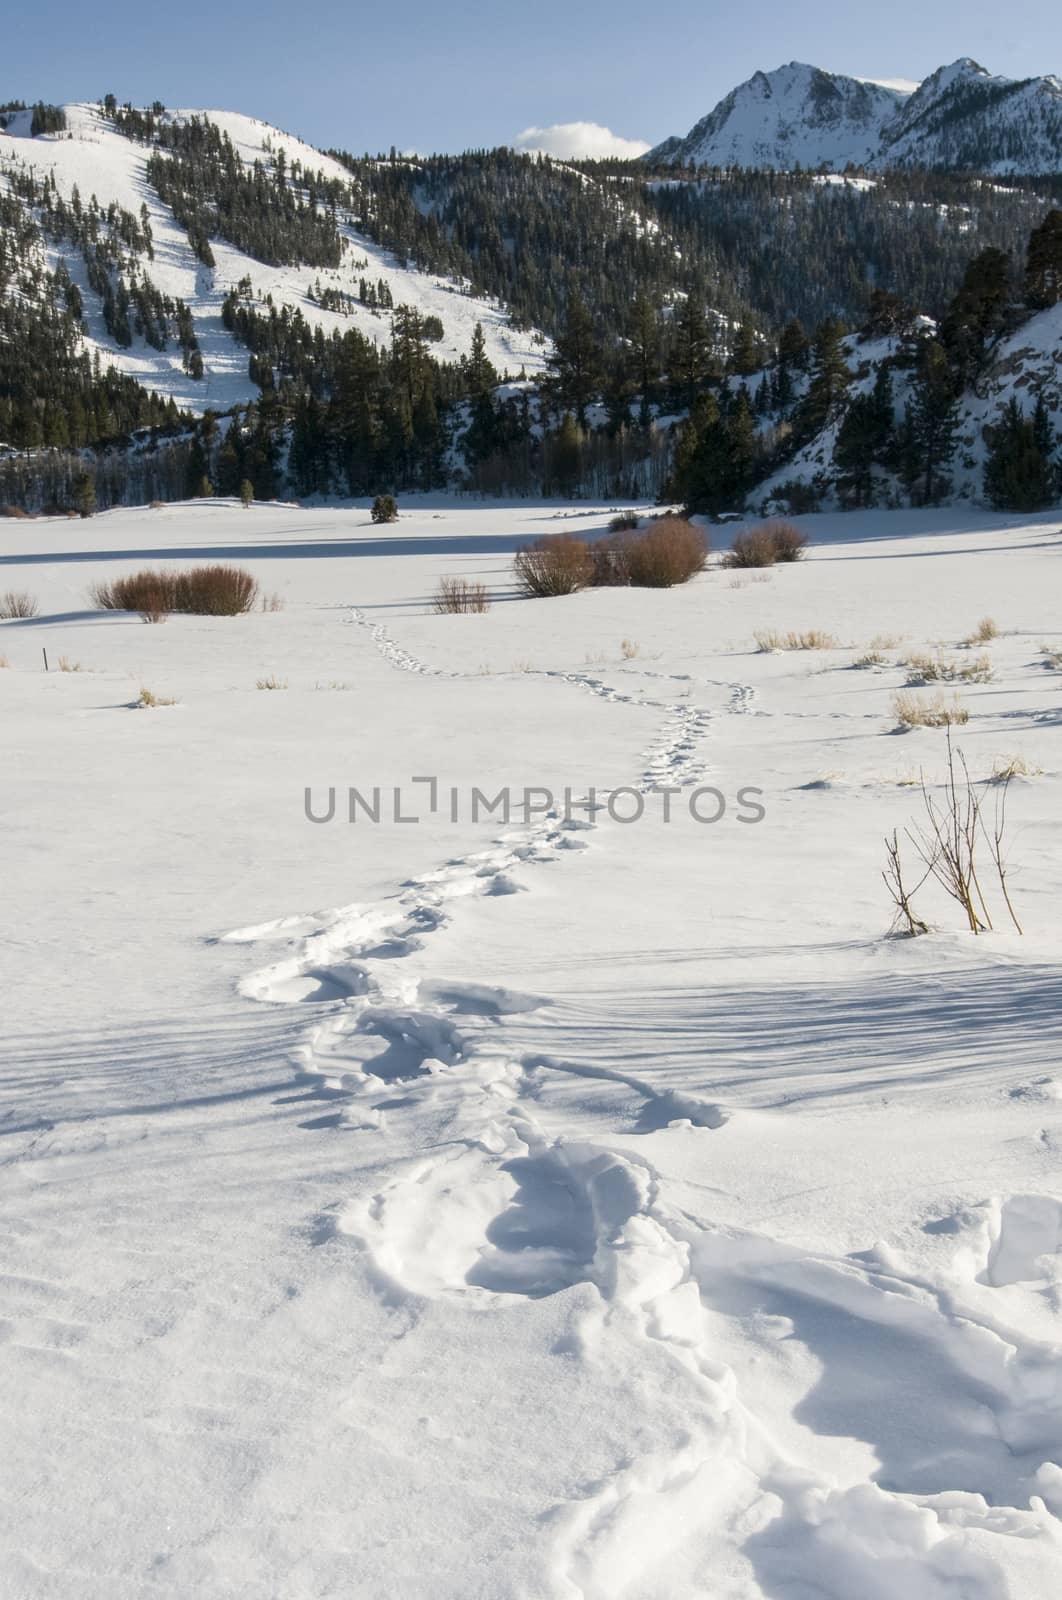 Footprints in the snow, June Lake Road, June Lake, CA